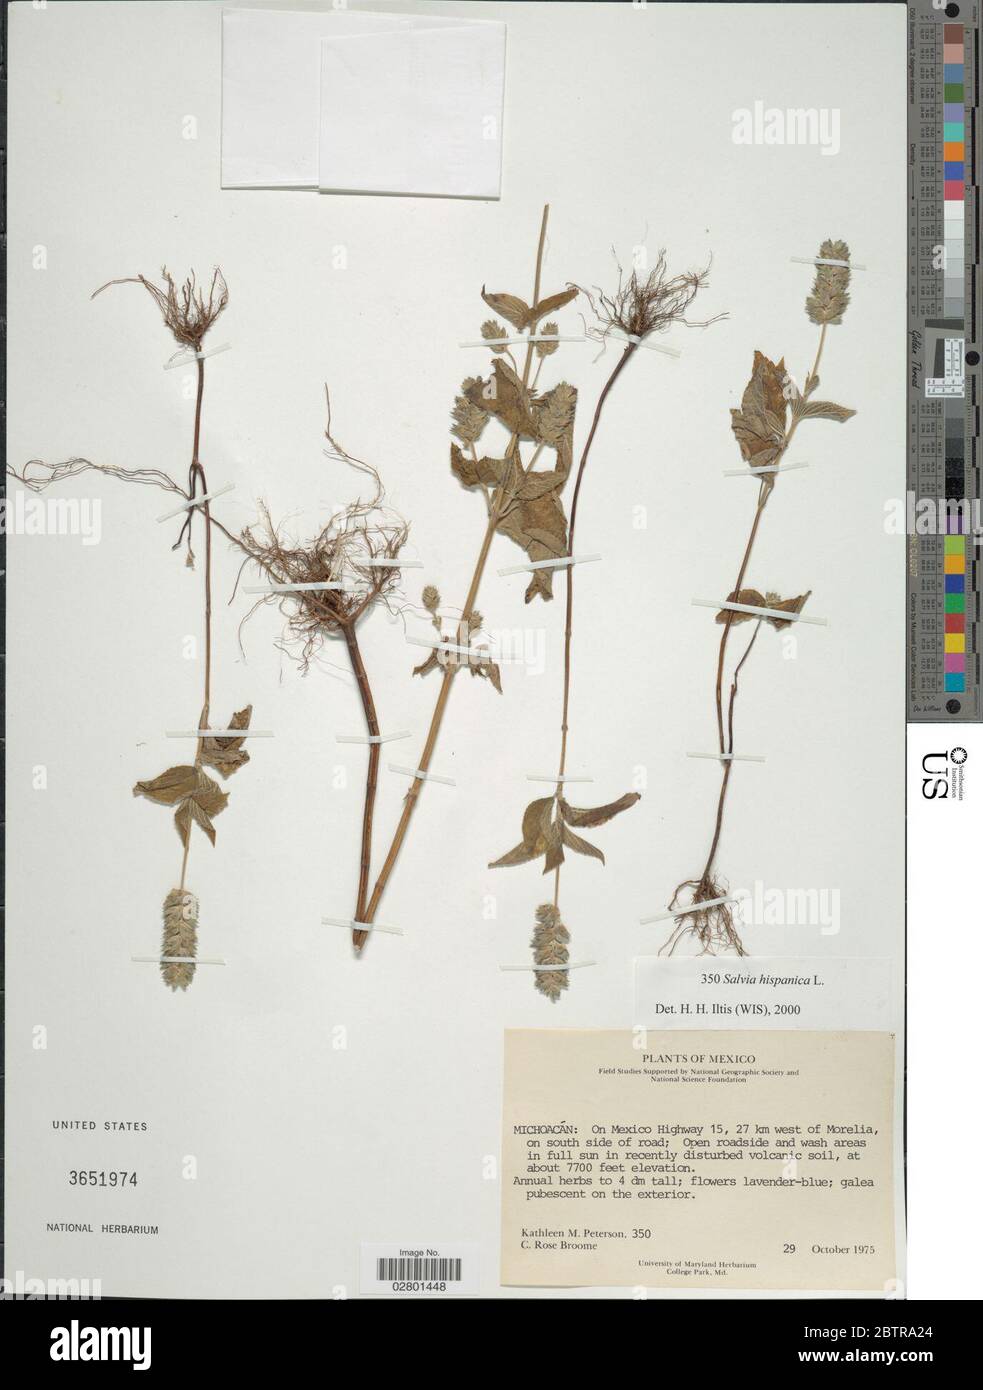 Salvia hispanica L Stock Photo - Alamy